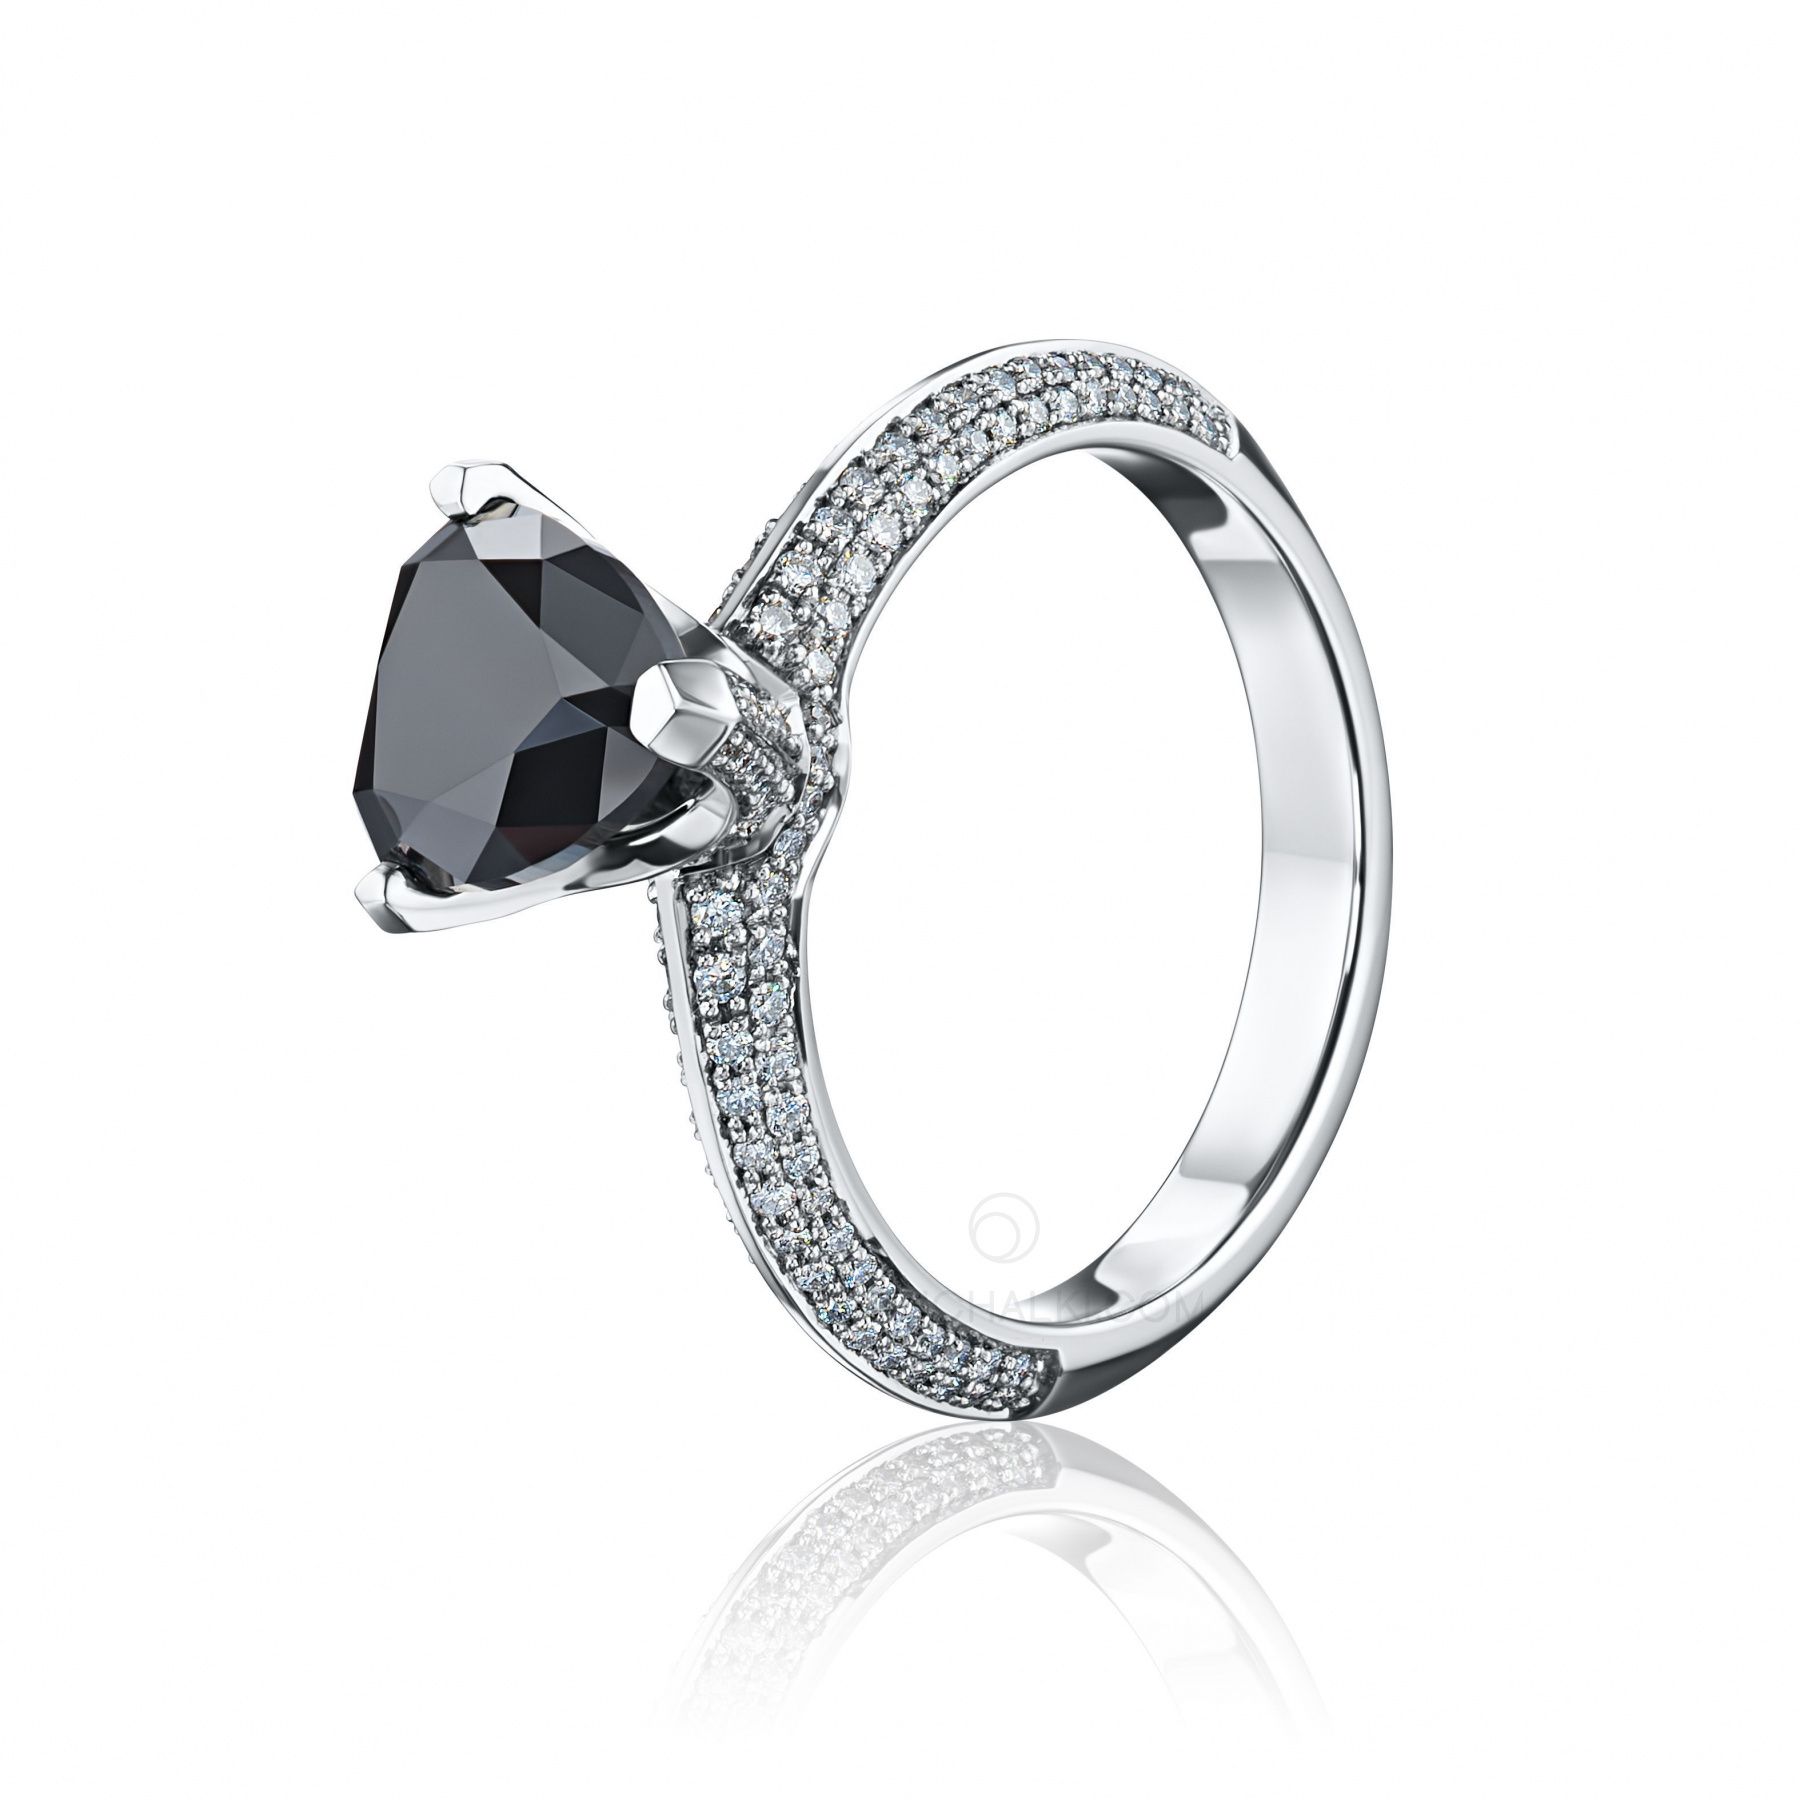 Помолвочное кольцо из белого золота с черным бриллиантом BLACK HEART купить в магазине: цена, оперативная доставка, отзывы